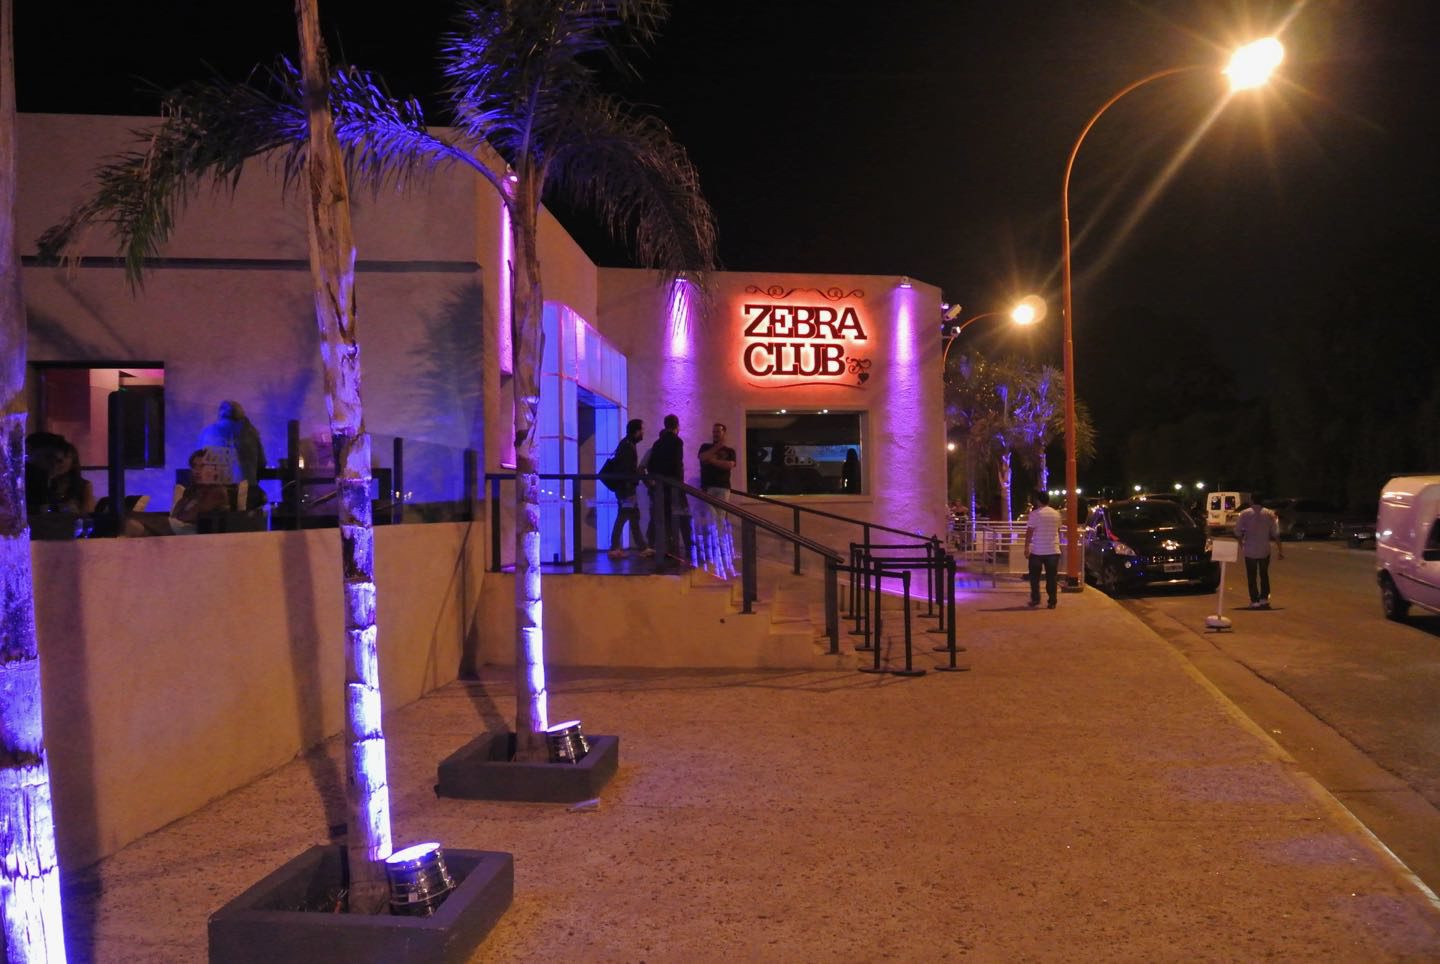 Discoteca Club Zebra, uno de los boliches mas famosos de Villa Carlos Paz.